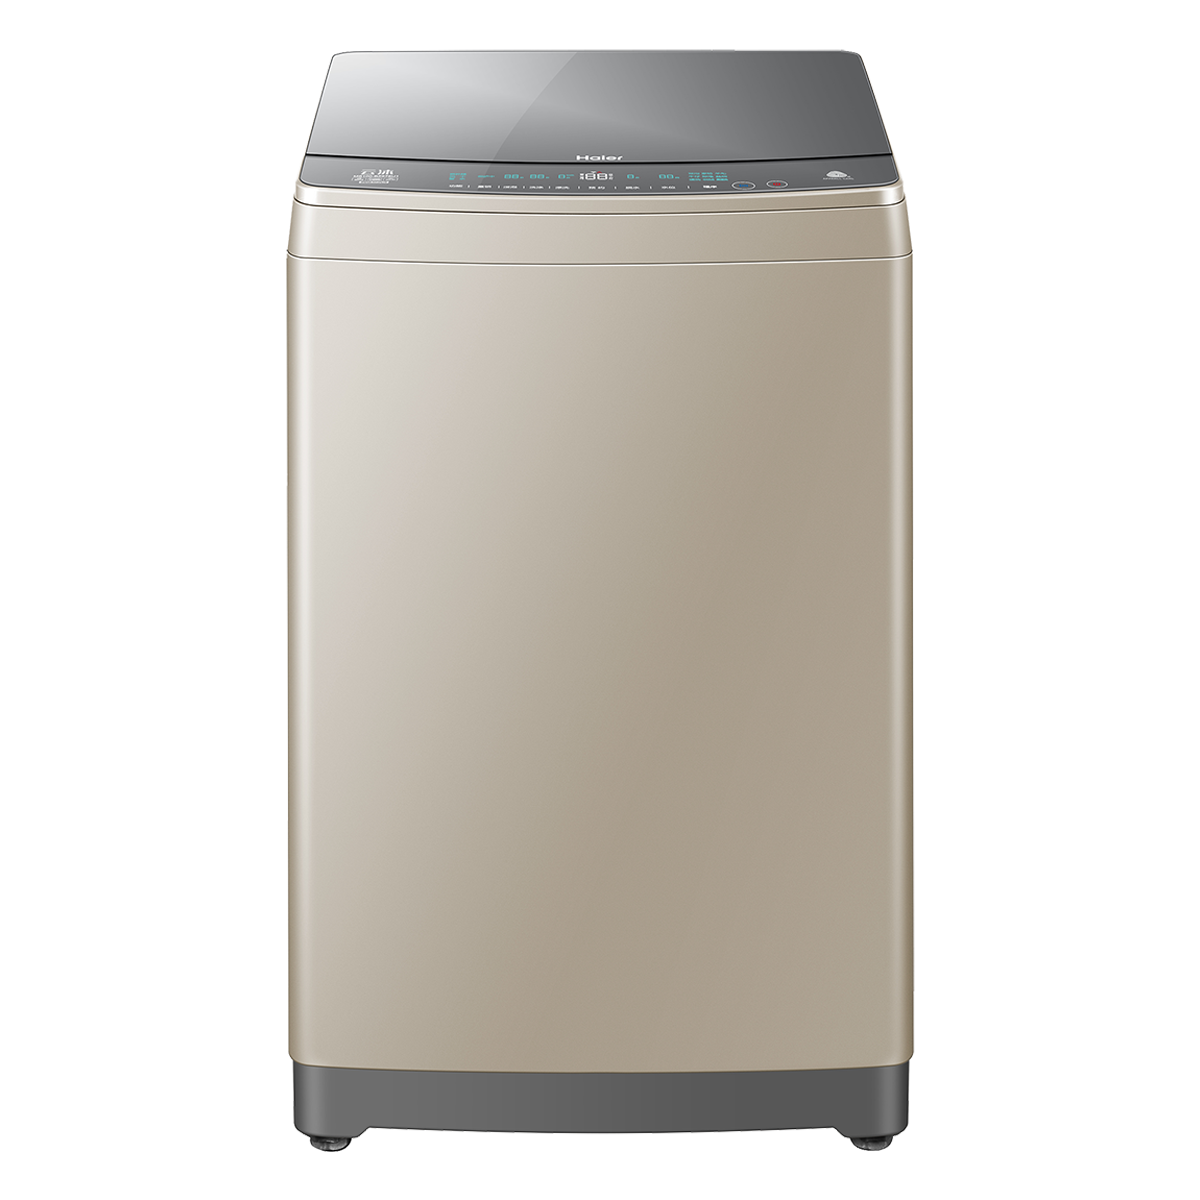 海尔Haier洗衣机 MS100-BZ886U1 说明书